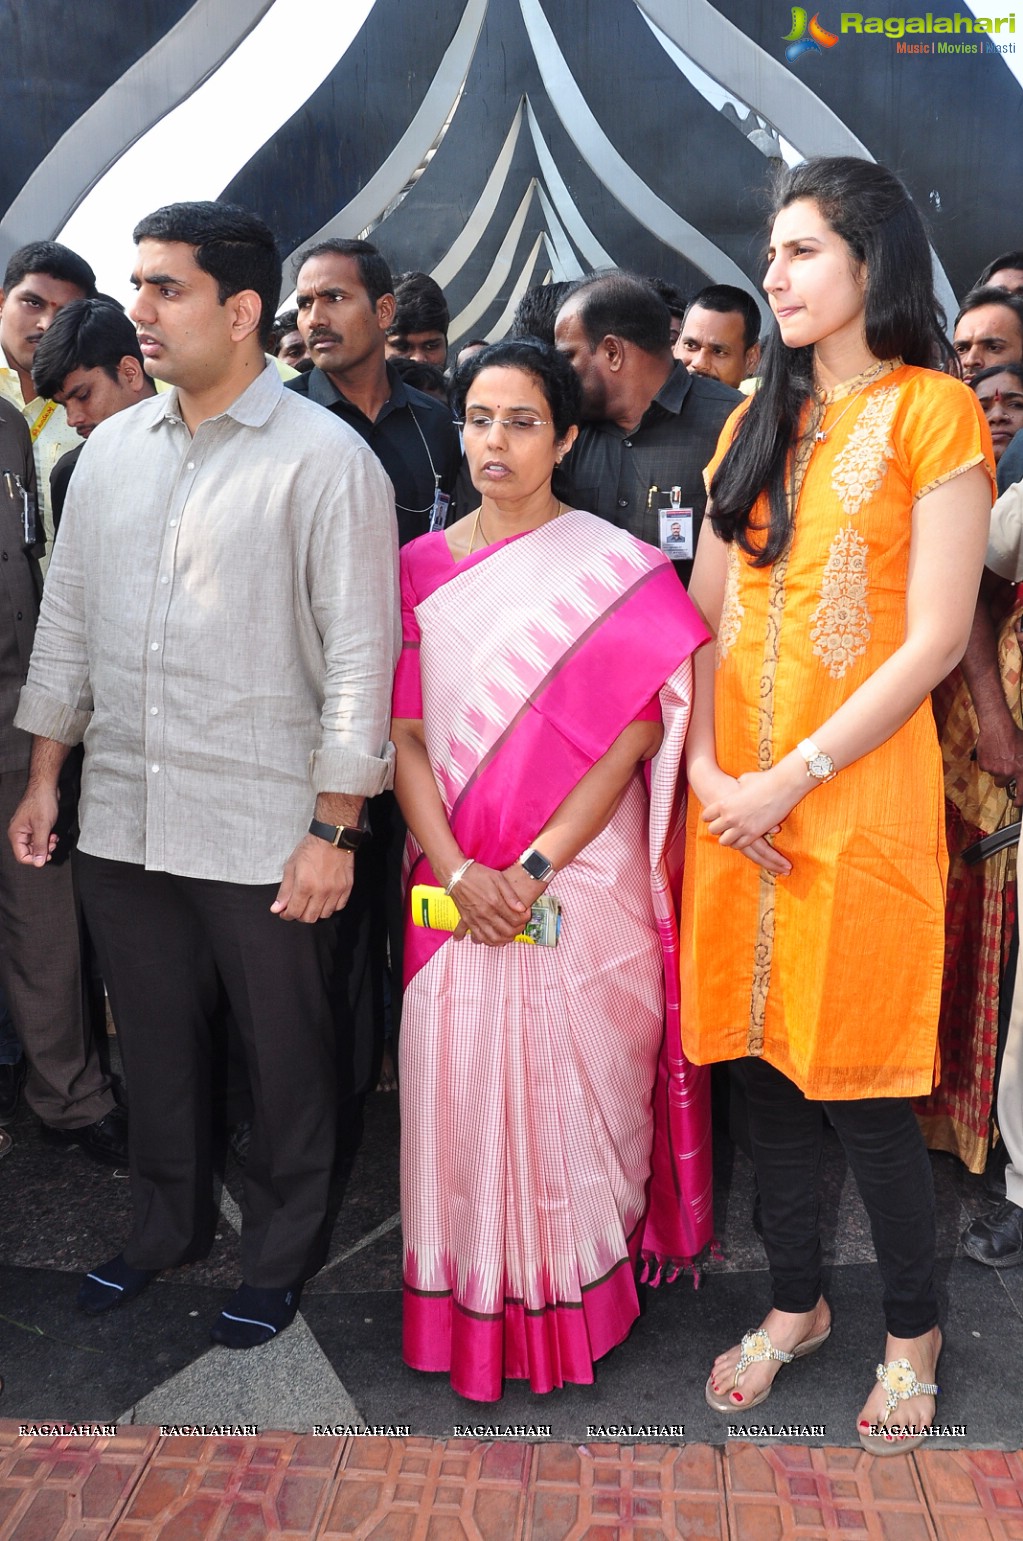 Nandamuri Family Members at NTR Ghat